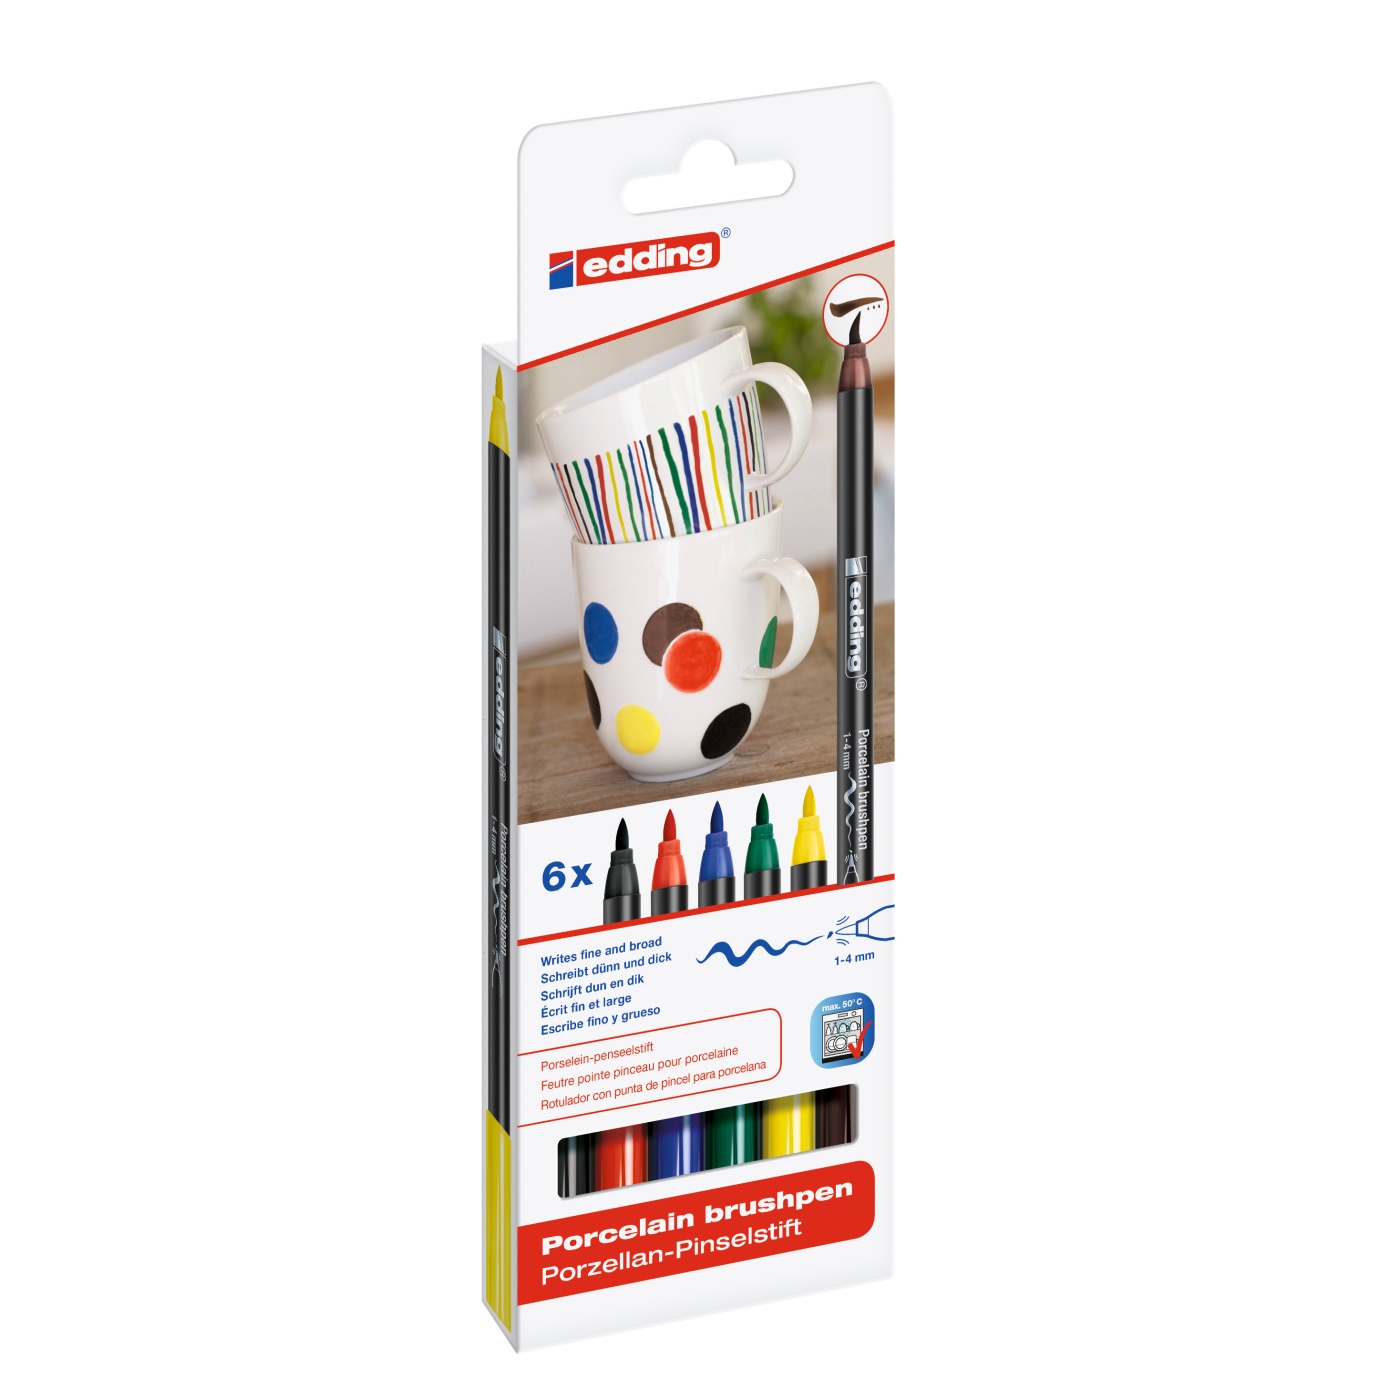 Hertellen spreken erven Edding 4200 Porcelain Brush Pen Family 6-set | Pen Store